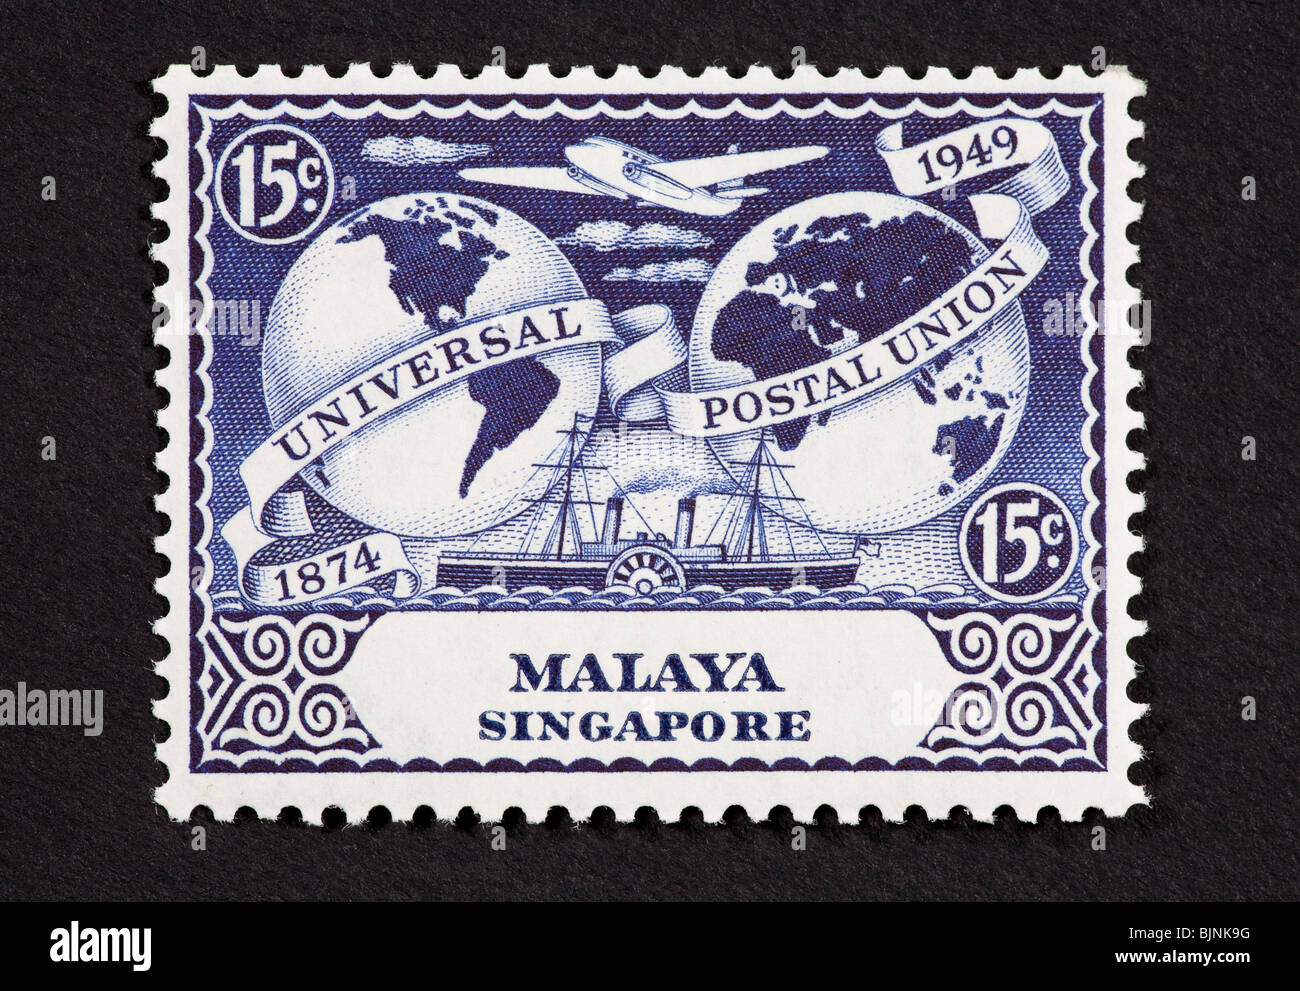 Francobollo da Malaya onorando il 75 esimo anniversario dell'Unione postale universale. Foto Stock